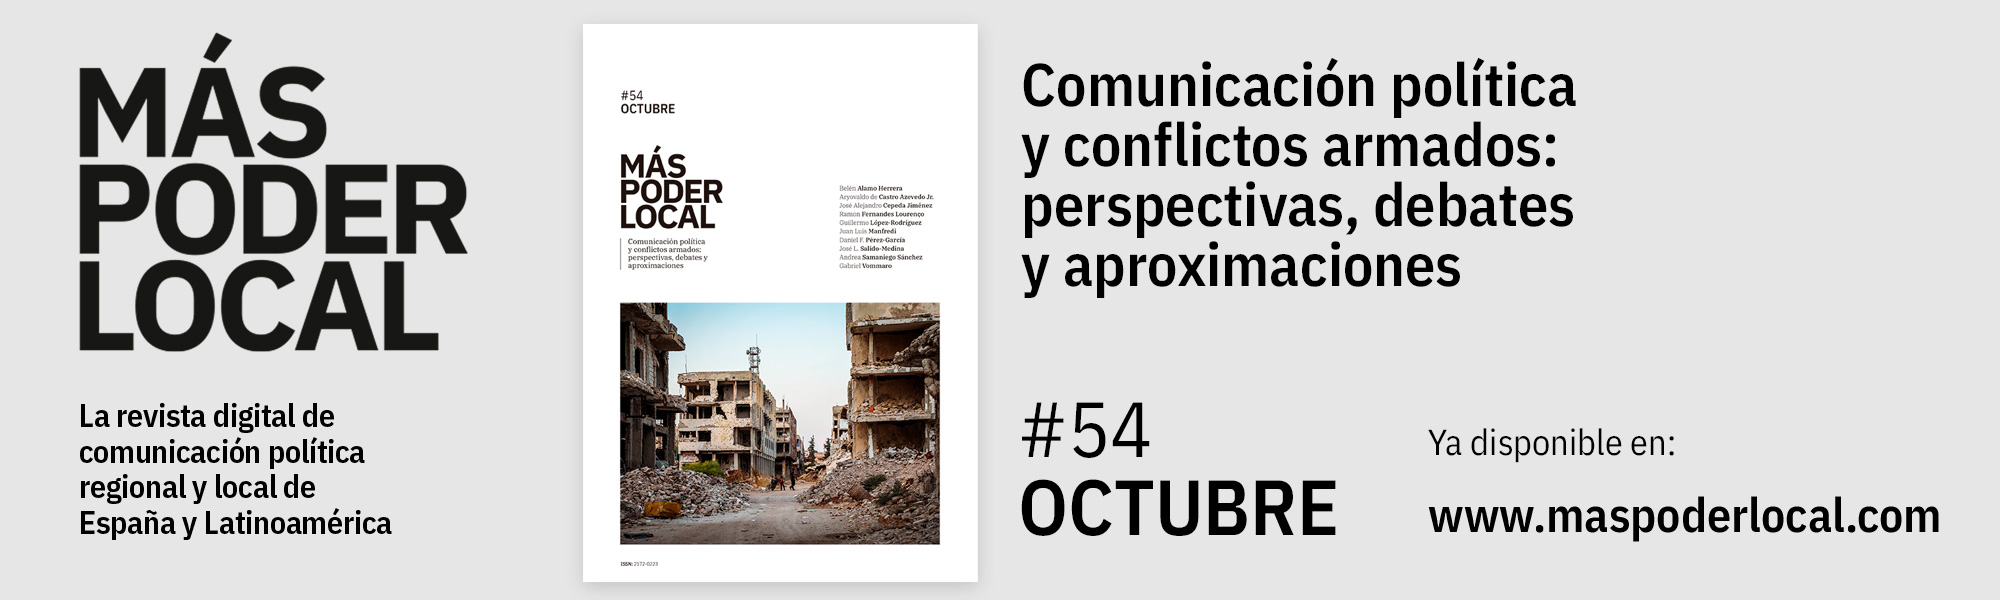 Comunicación política y conflictos armados, edición nº54 de la Revisa Más Poder Local, ya disponible